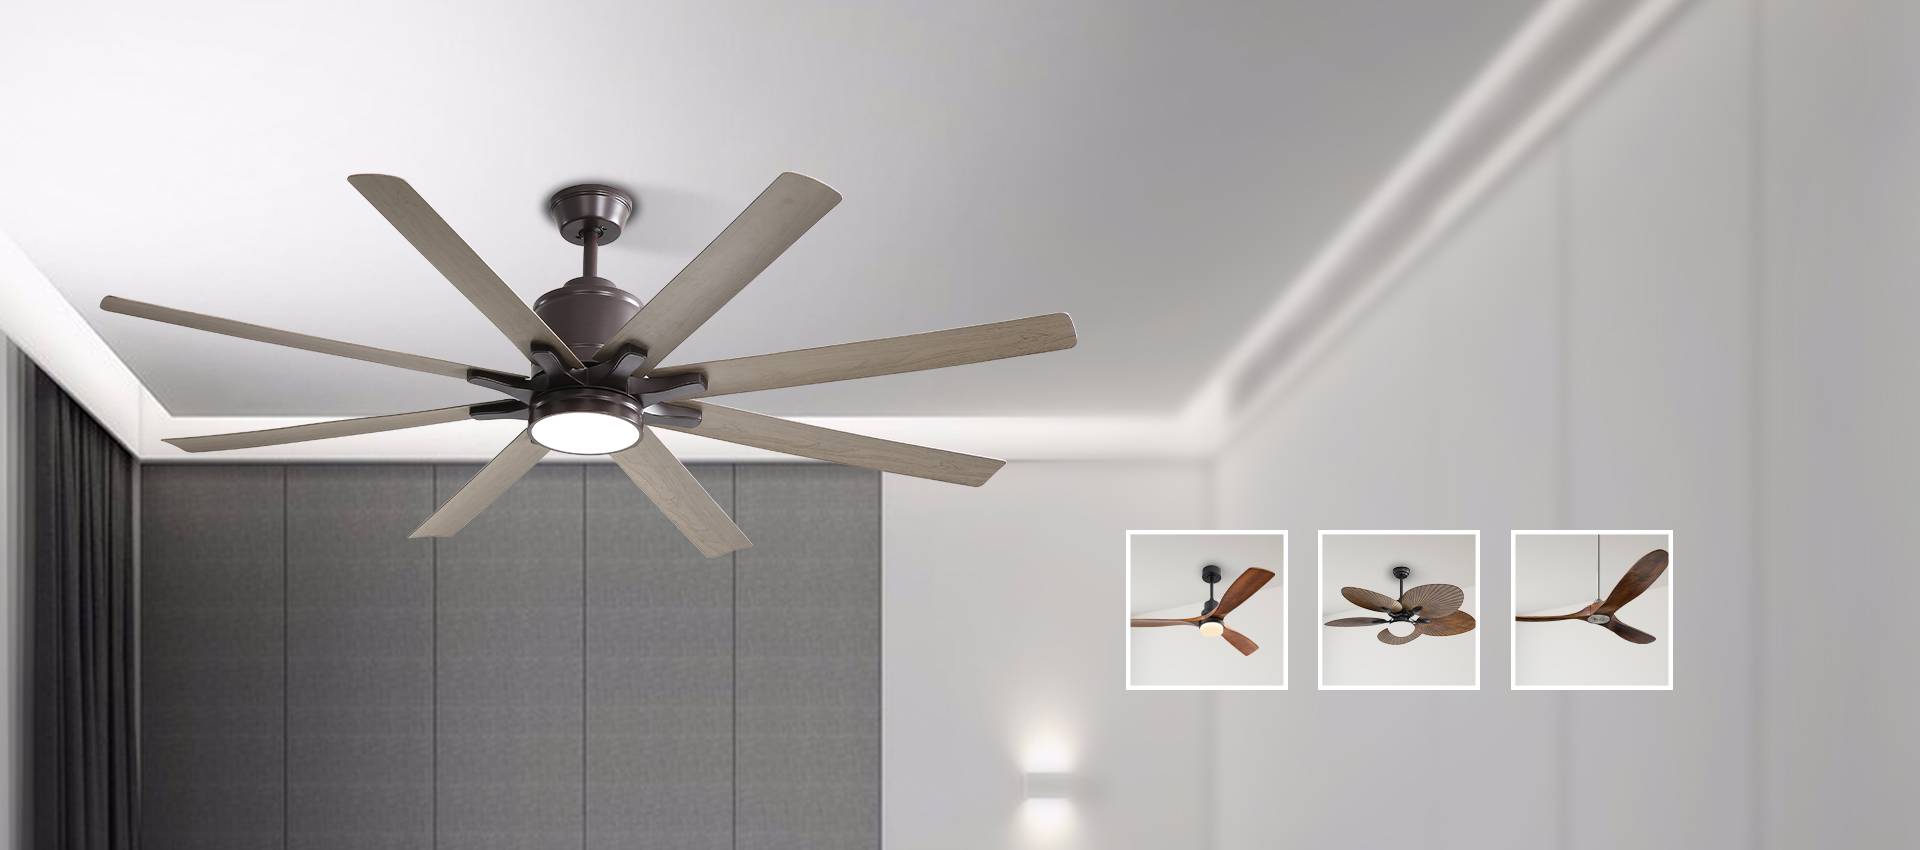 wooden ceiling fan hot sales